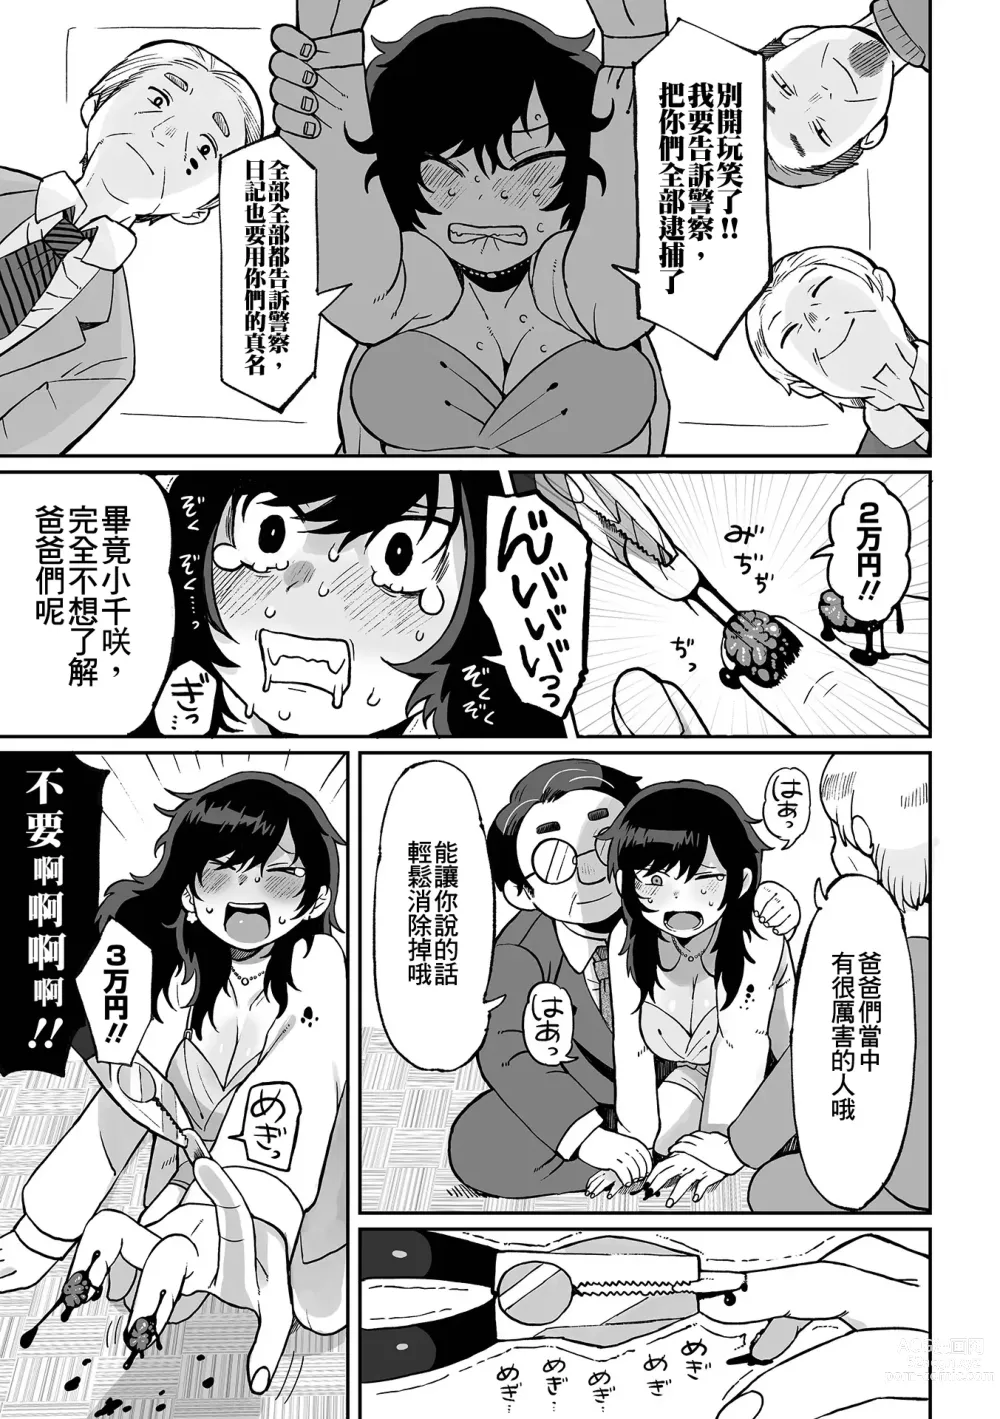 Page 12 of manga Nee Papa onegai